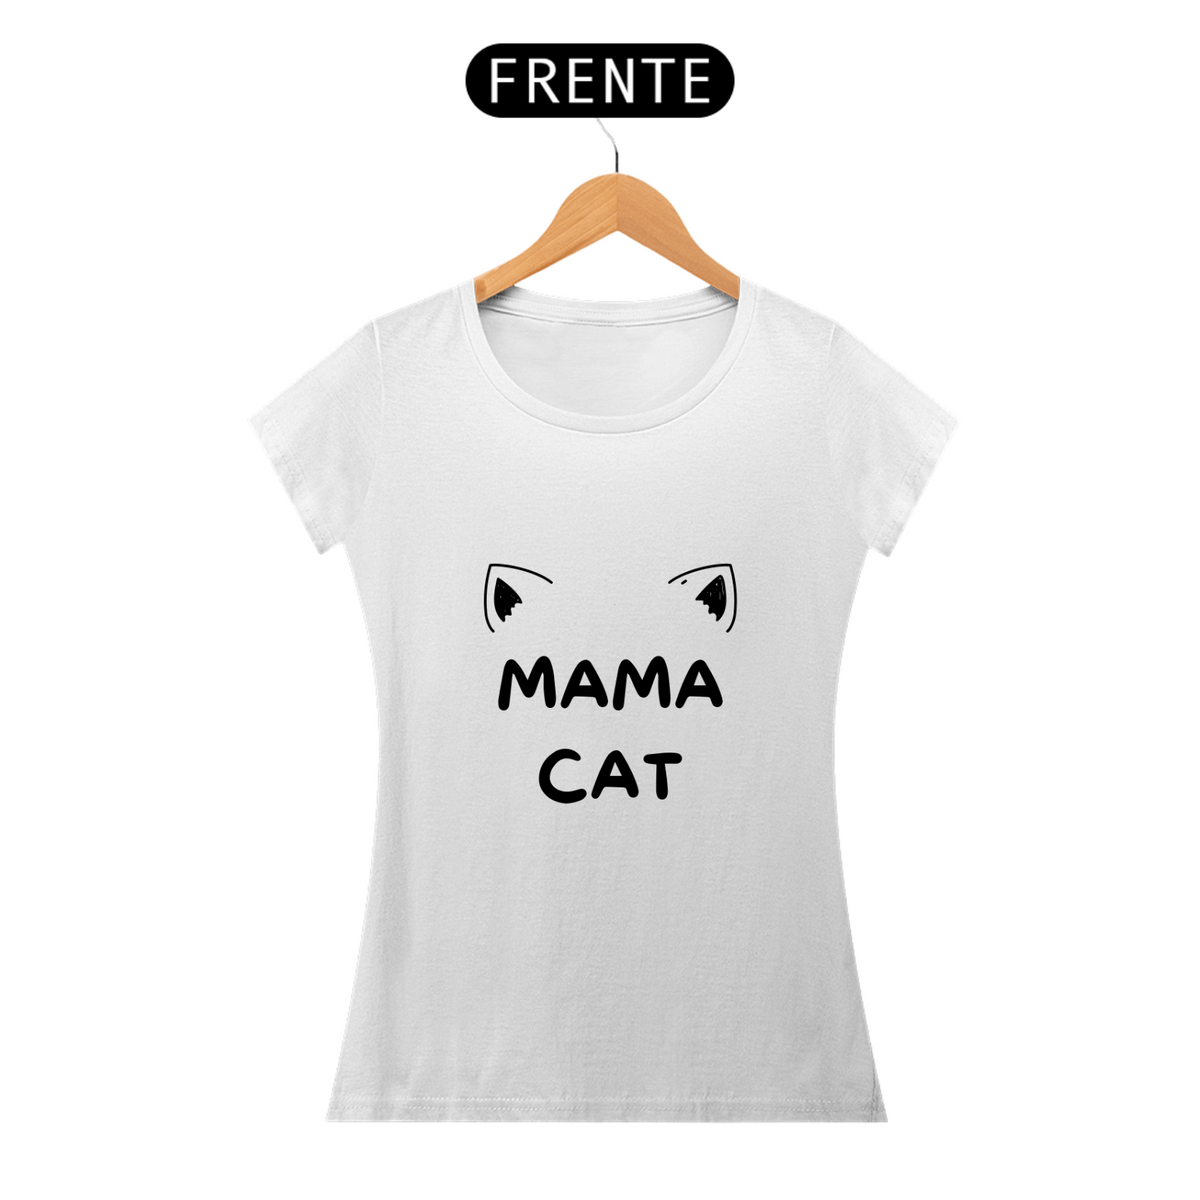 Nome do produto: Camiseta Mama Cat (Mamãe Gato)